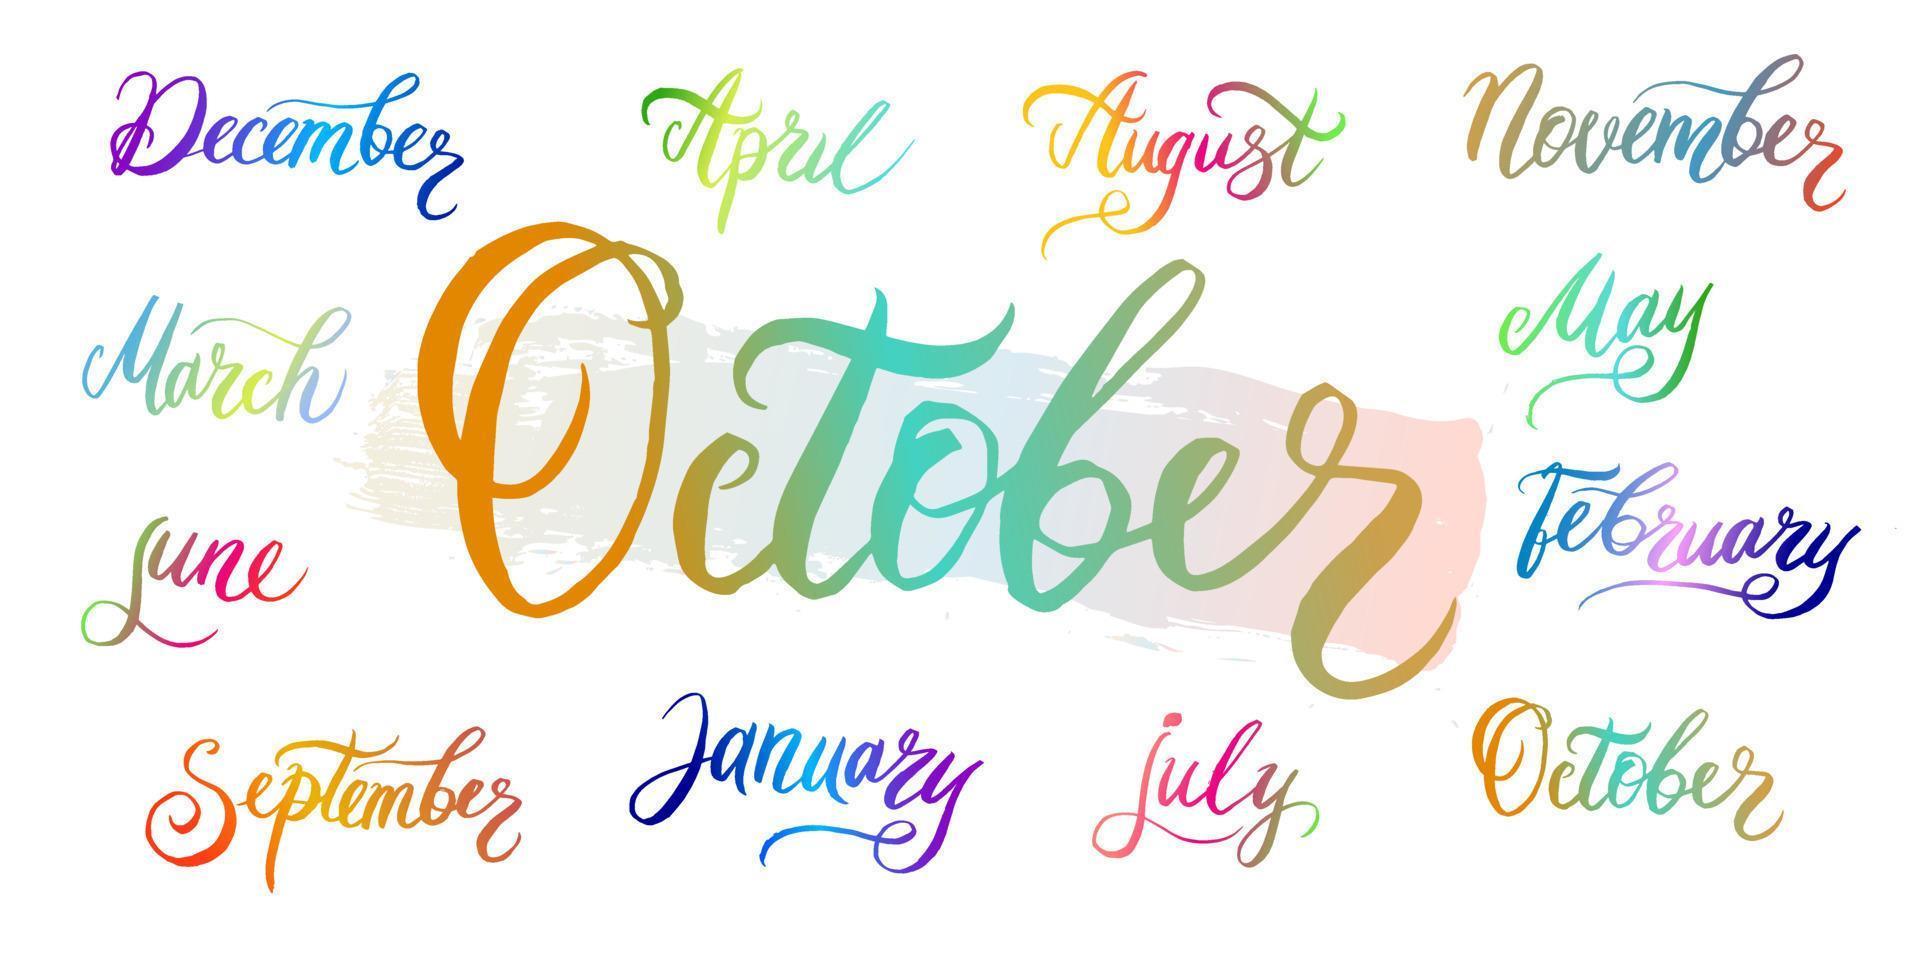 noms de mois manuscrits décembre, janvier, février, mars, avril, mai, juin, juillet, août, septembre, octobre, novembre avec dégradé de couleurs. mots calligraphiques pour calendriers et organisateurs. vecteur